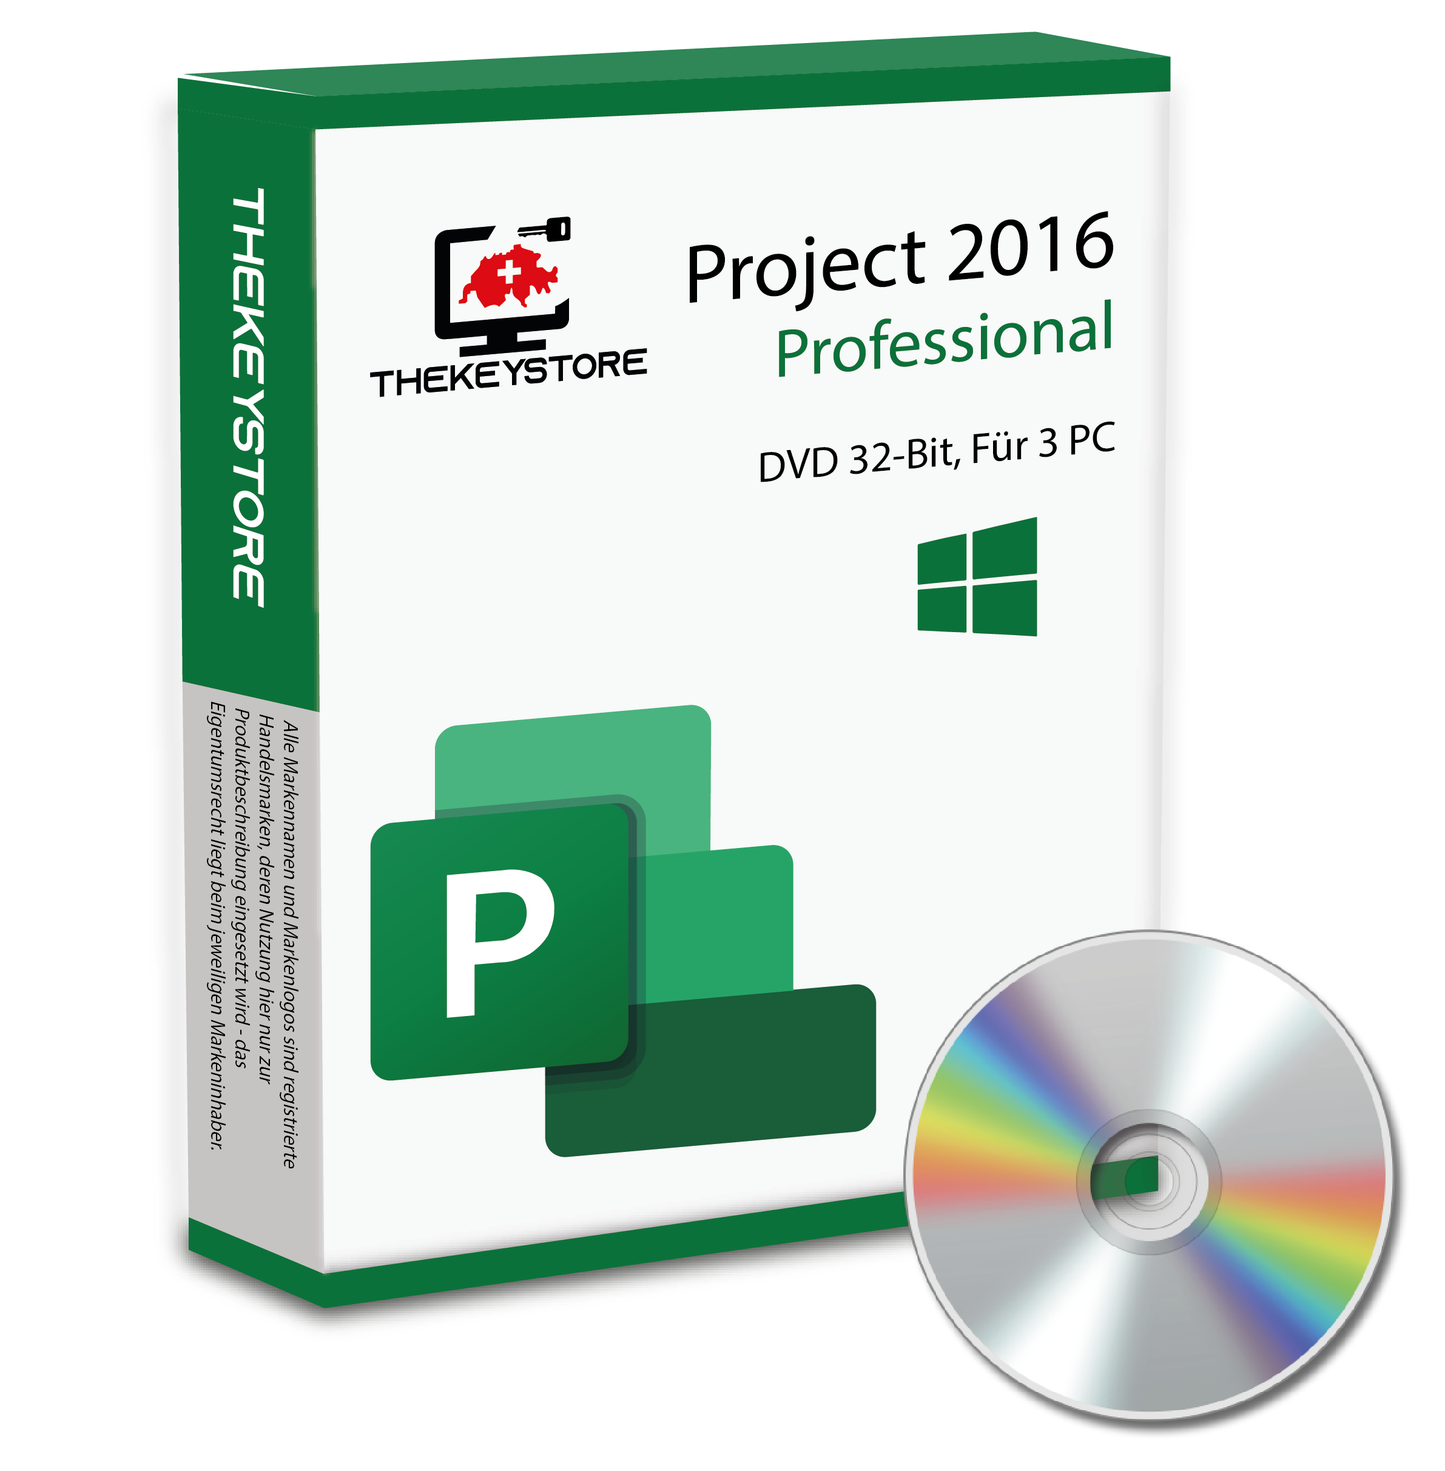 Microsoft Project 2016 Professional - Für 3 PC - TheKeyStore Schweiz